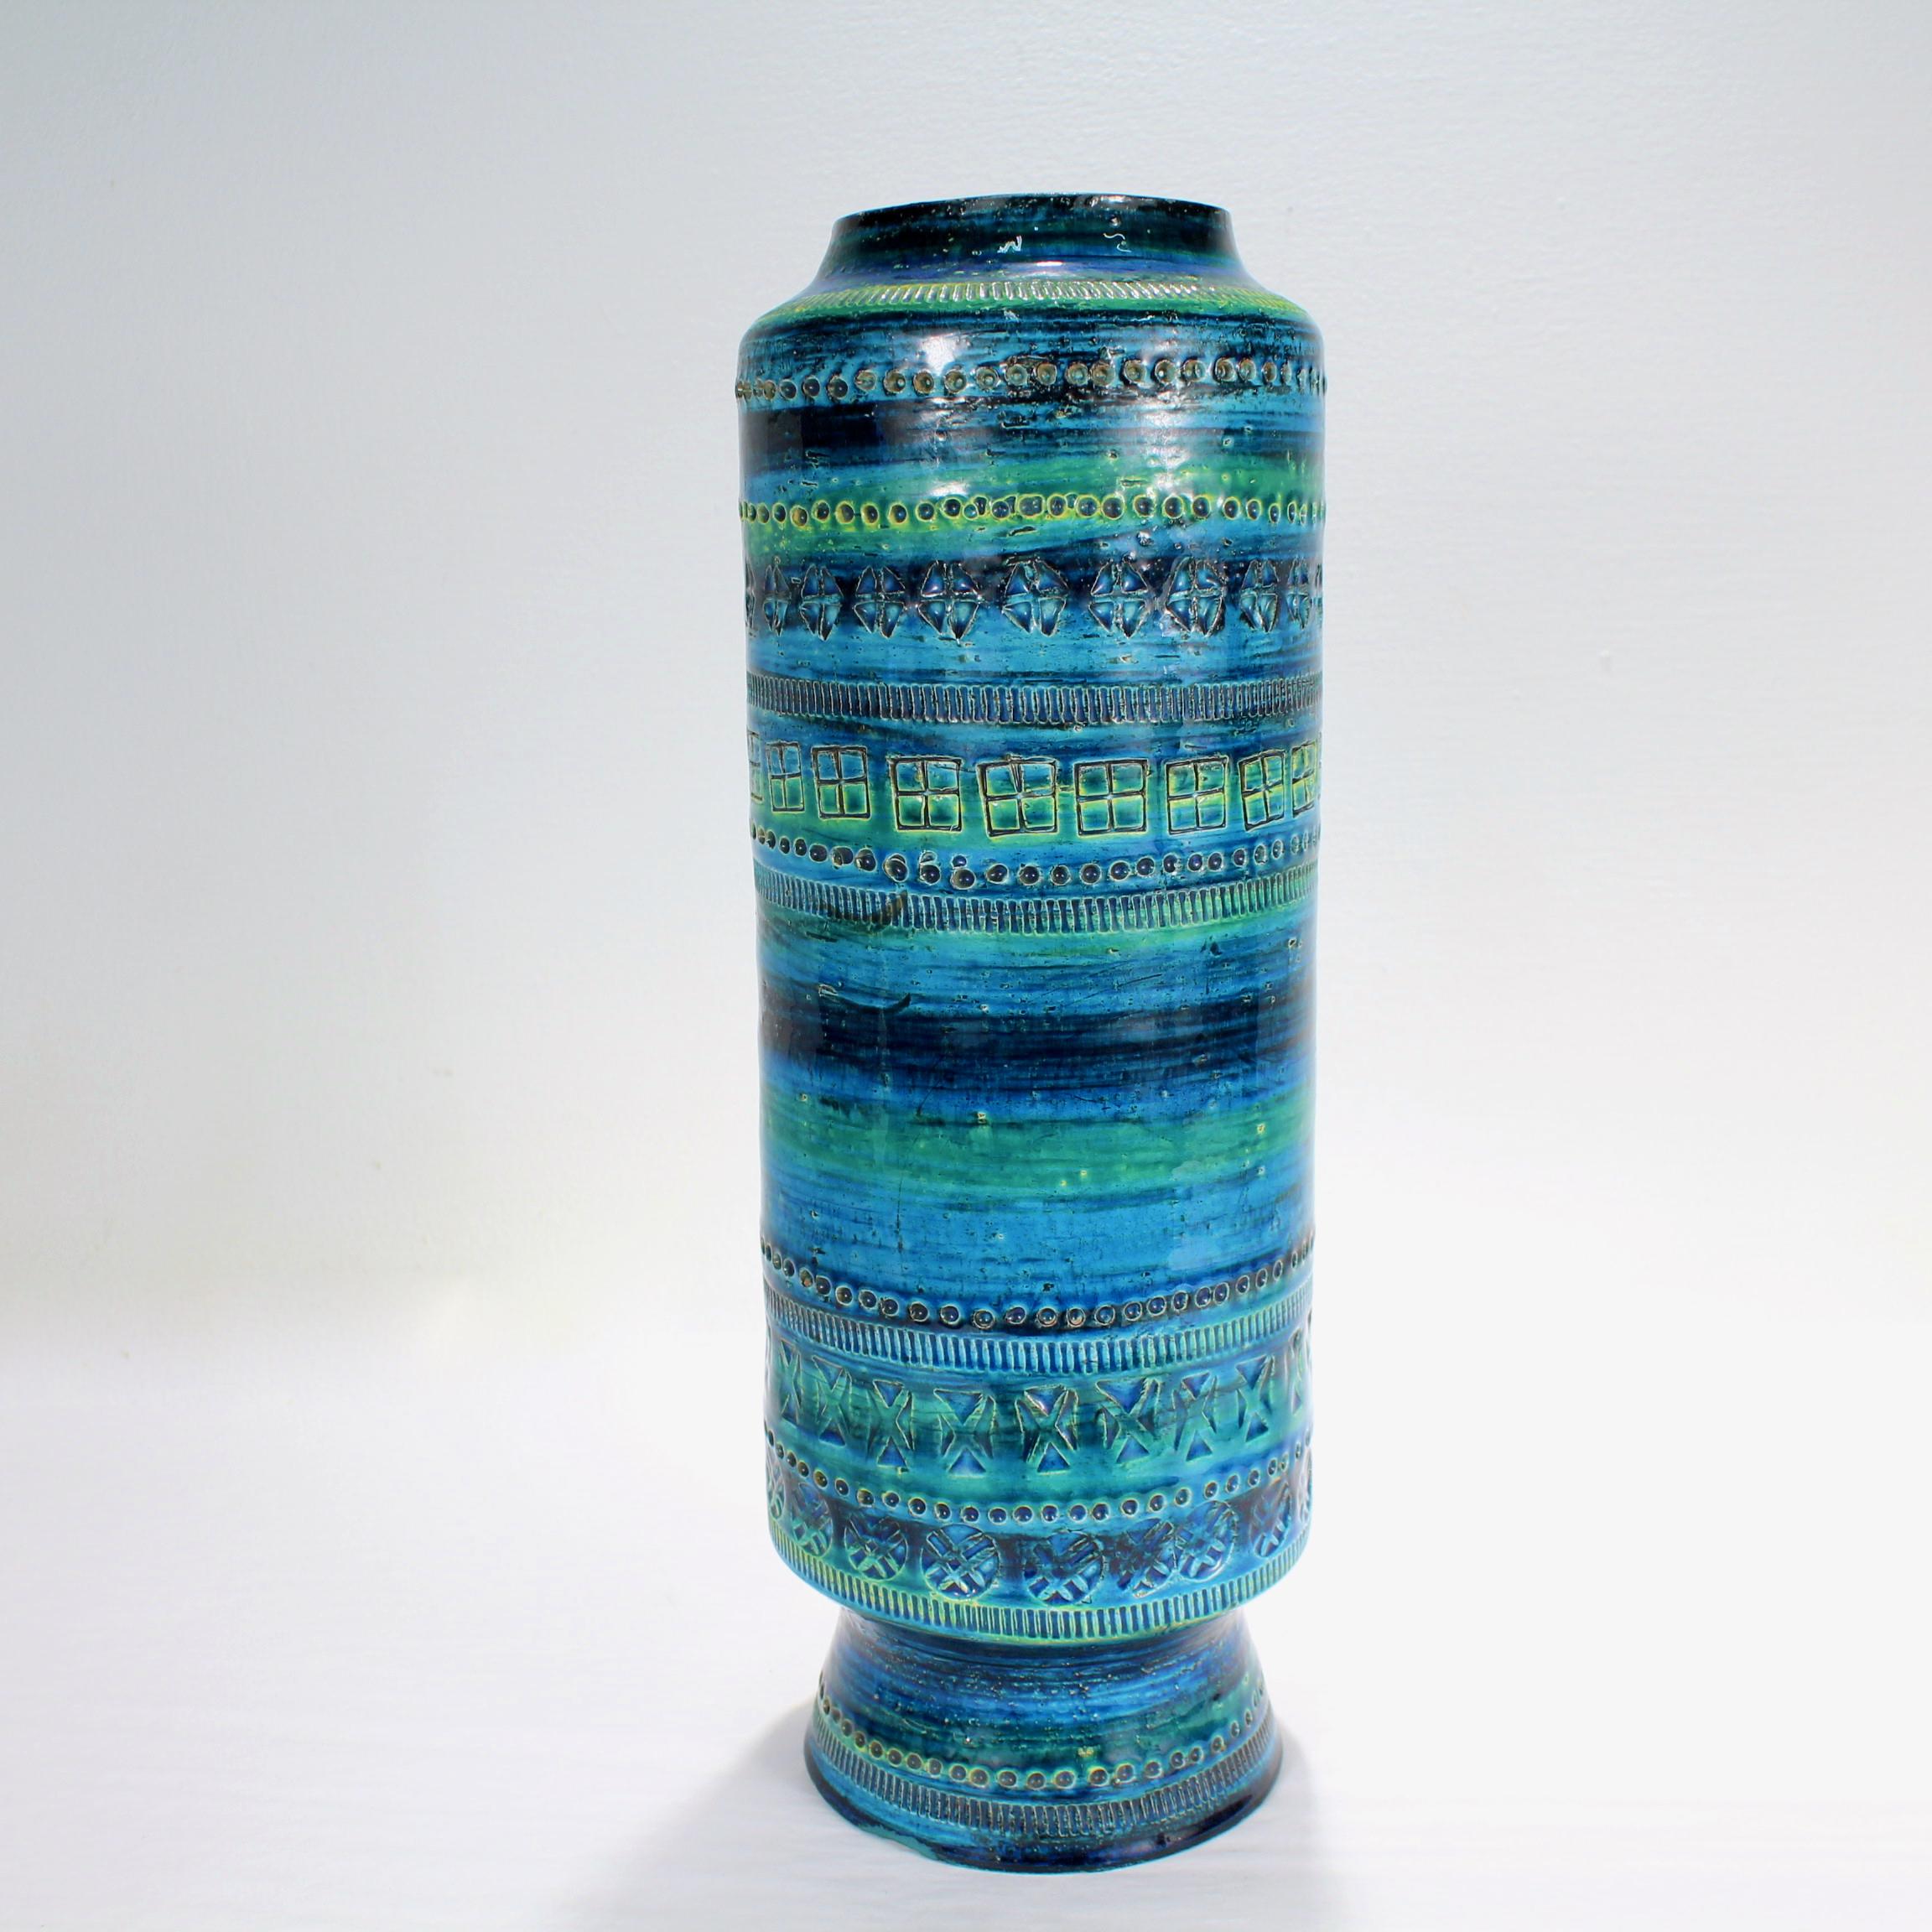 Vase en poterie bleue de Rimini datant du milieu du siècle dernier. 

Par Aldo Londi pour Raymor.

Réalisé dans le célèbre style Rimini Blue de Londi, le vase présente une riche glaçure bleue avec des nuances vertes et est recouvert de motifs